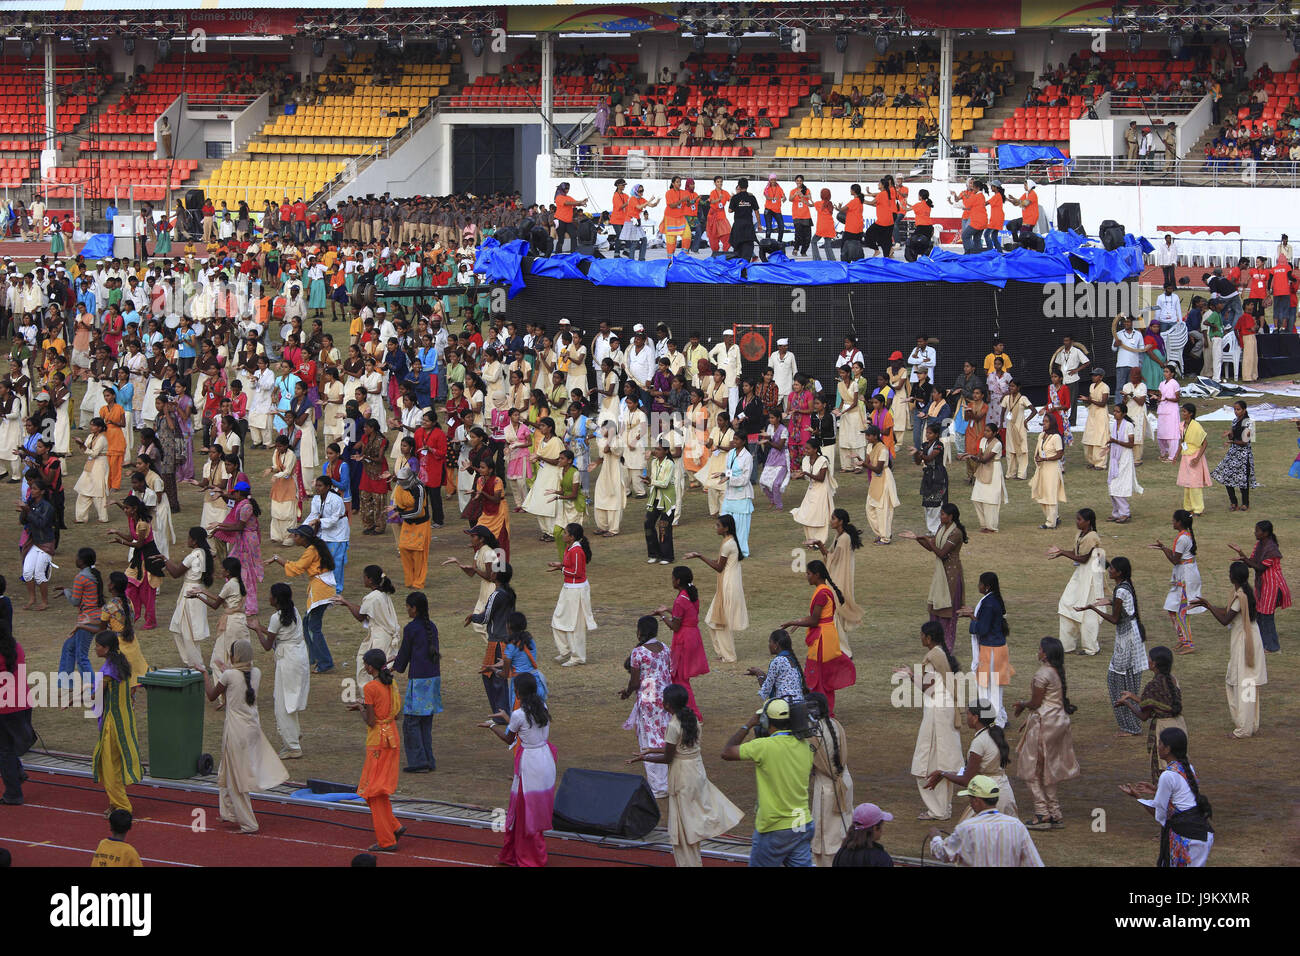 Les répétitions de danse cérémonie d'inauguration, Pune, Maharashtra, Inde, Asie Banque D'Images